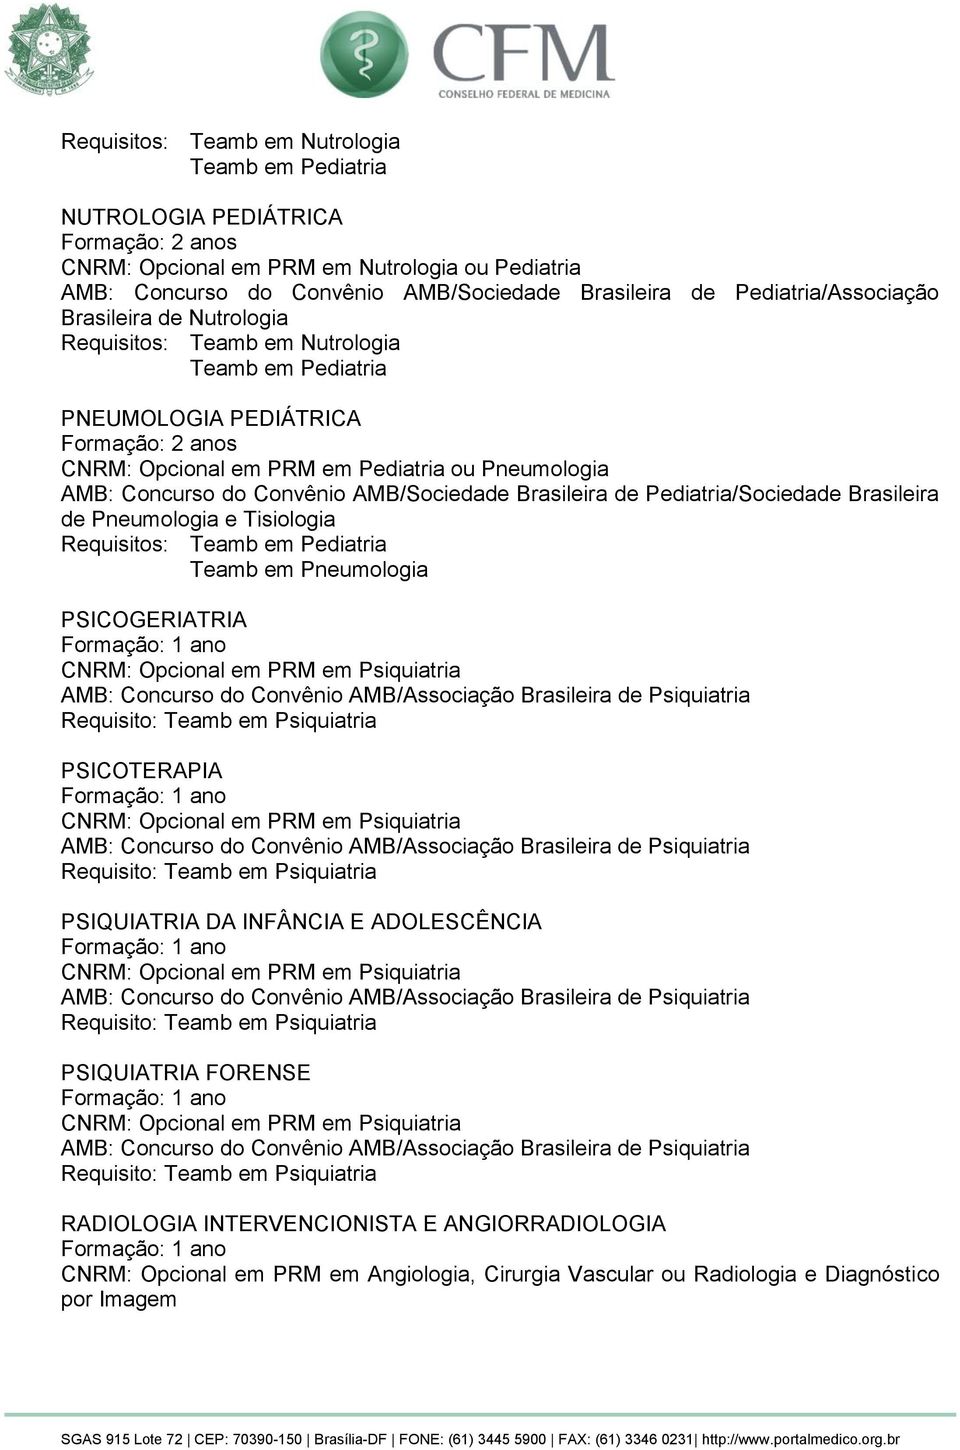 Brasileira de Pneumologia e Tisiologia Requisitos: Teamb em Pneumologia PSICOGERIATRIA CNRM: Opcional em PRM em Psiquiatria AMB: Concurso do Convênio AMB/Associação Brasileira de Psiquiatria